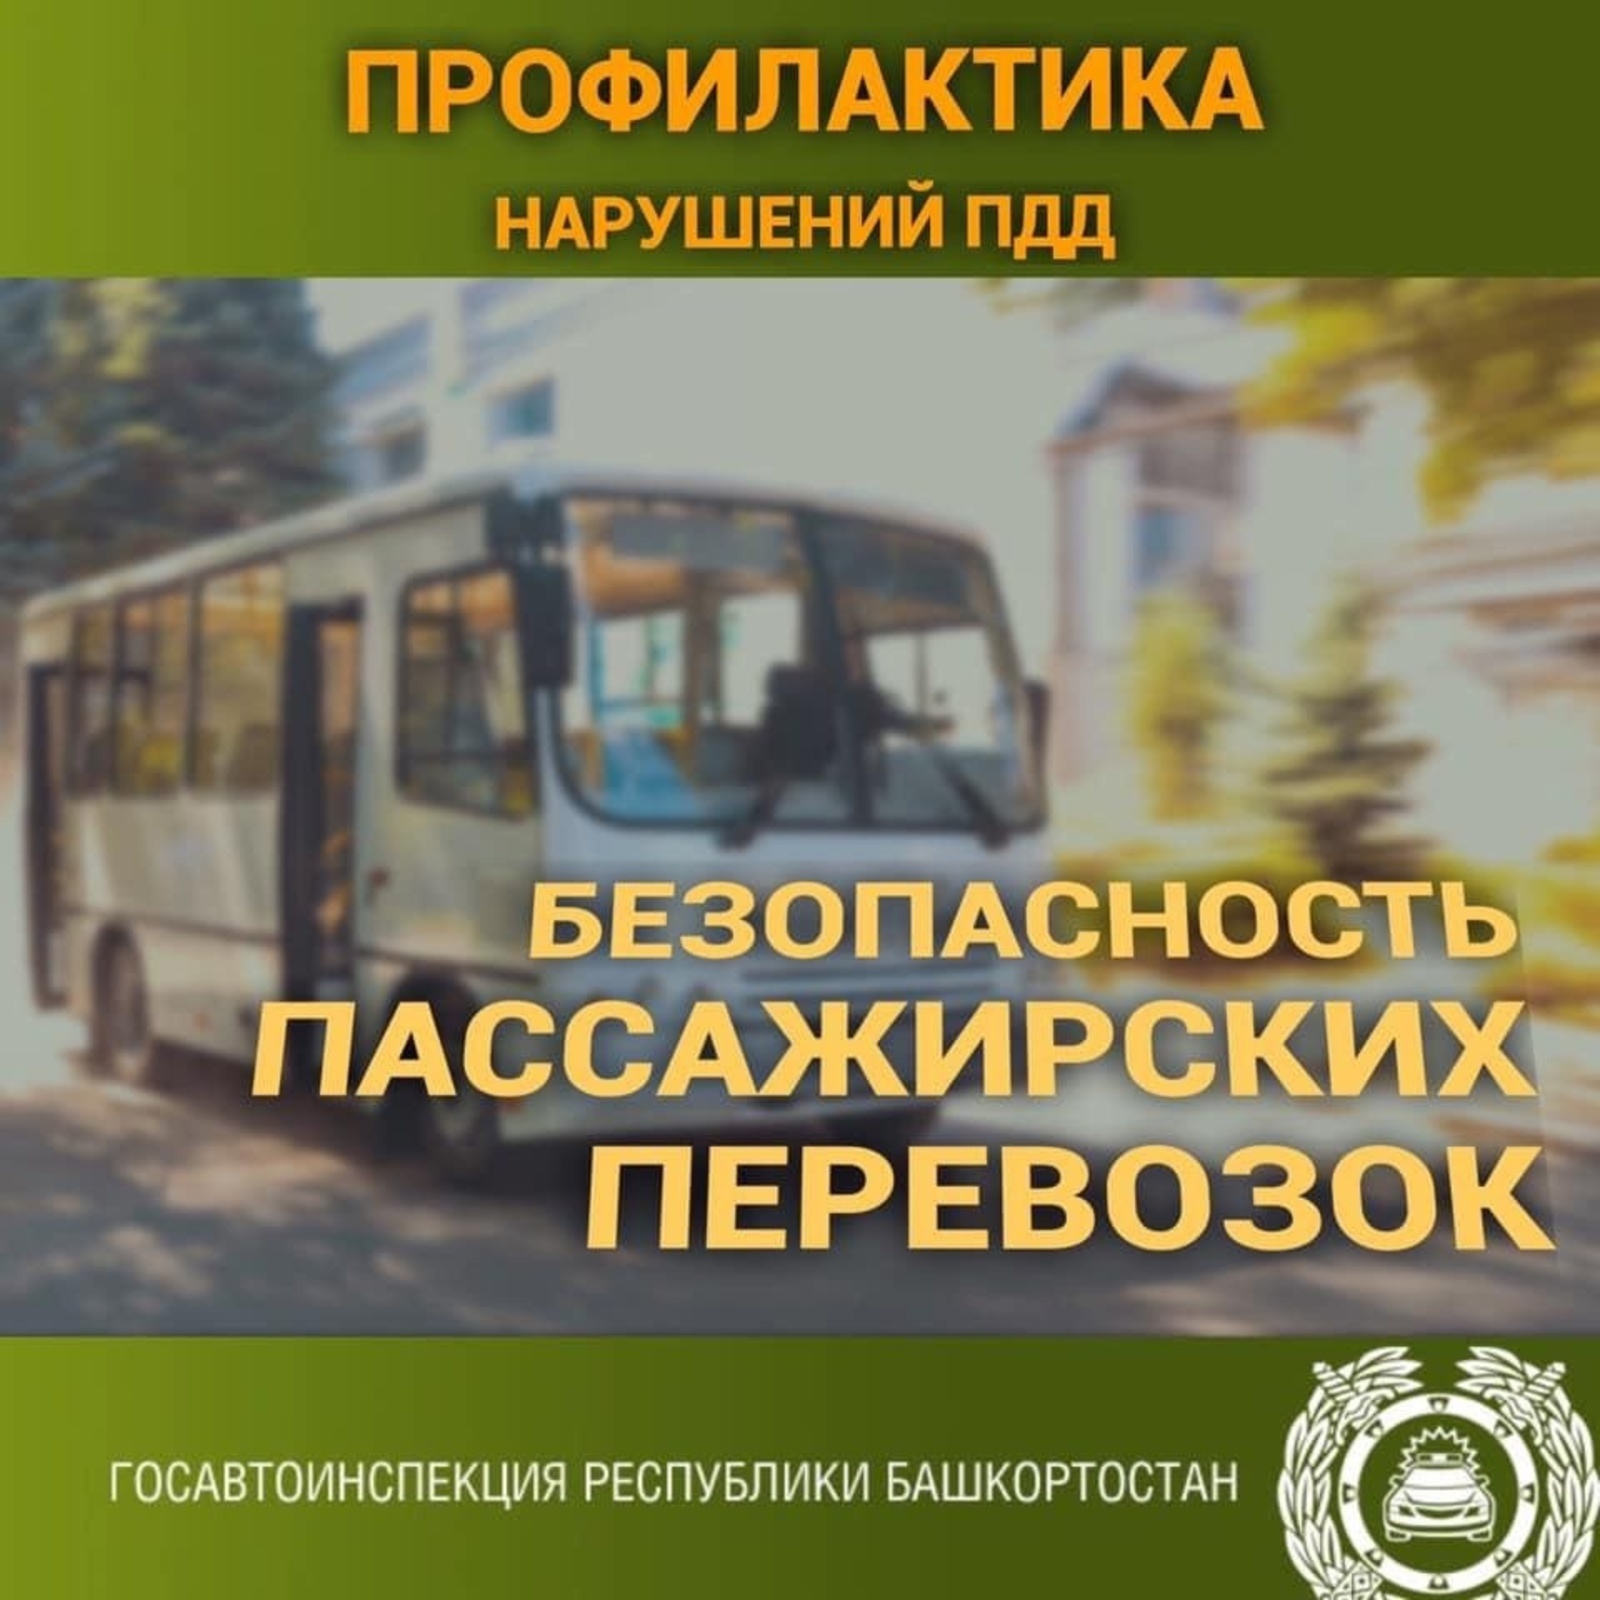 В Башкирии увеличилось количество ДТП с участием пассажирского транспорта